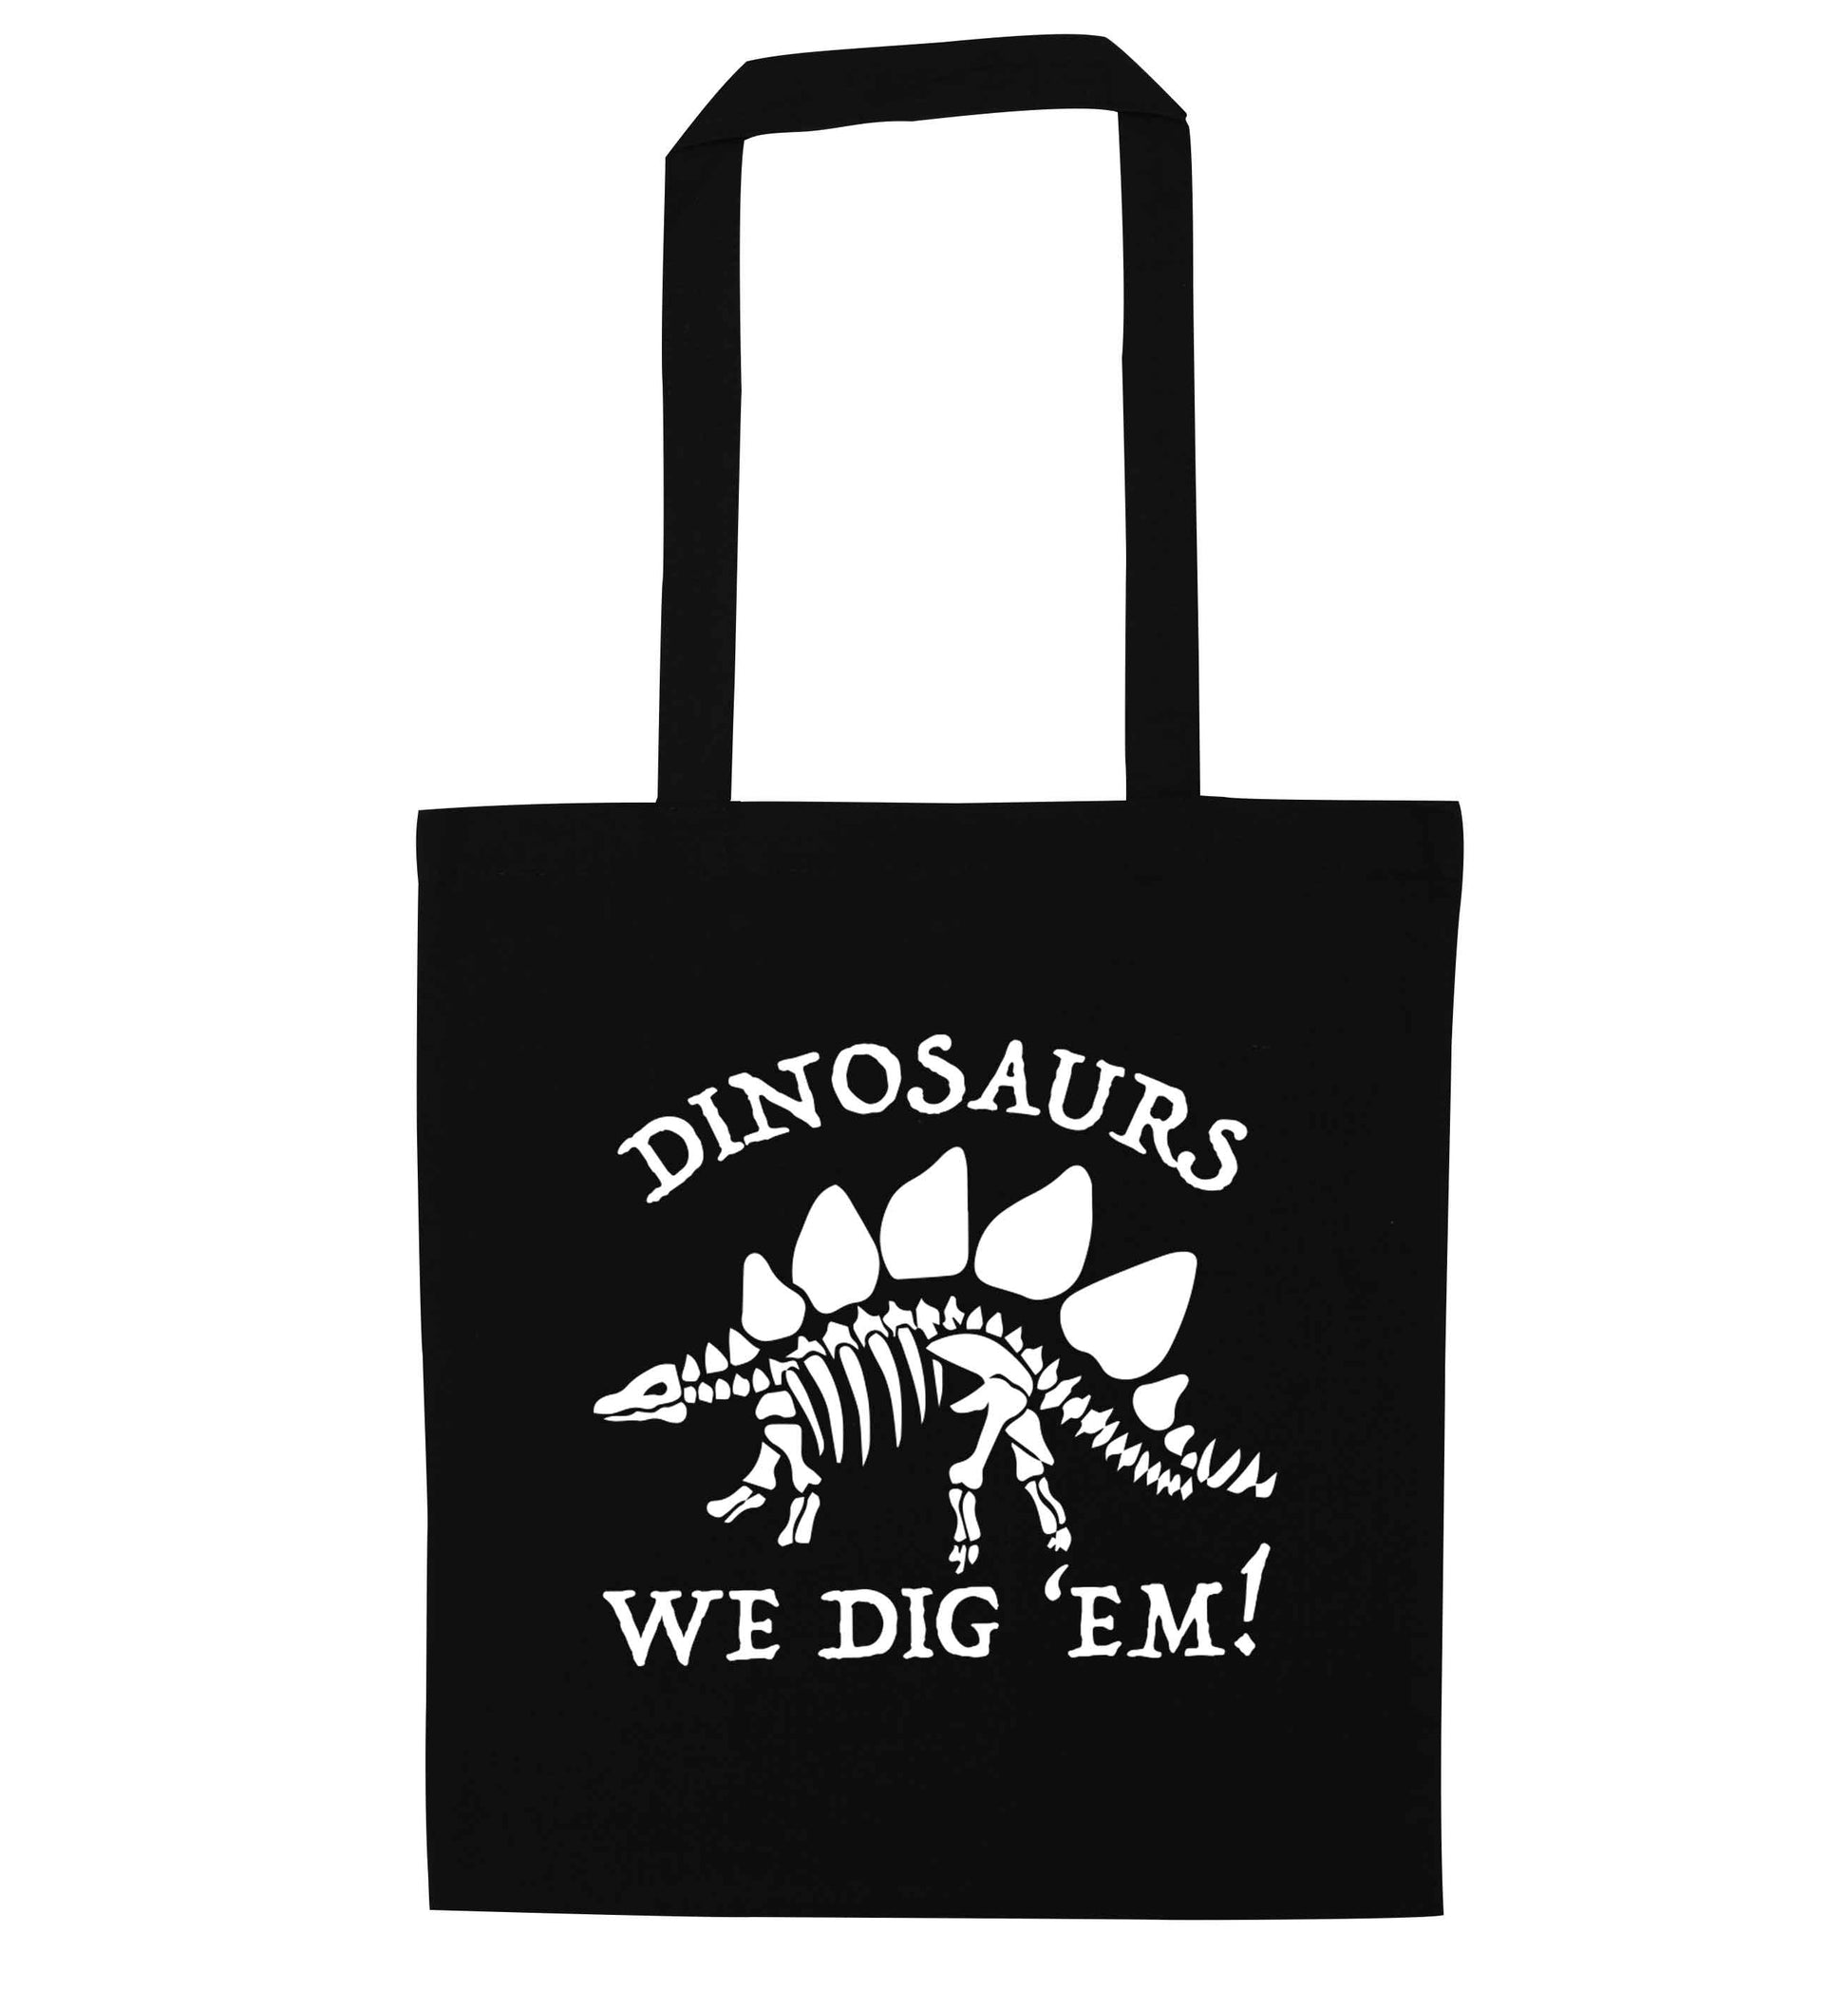 Dinosaurs we dig 'em! black tote bag